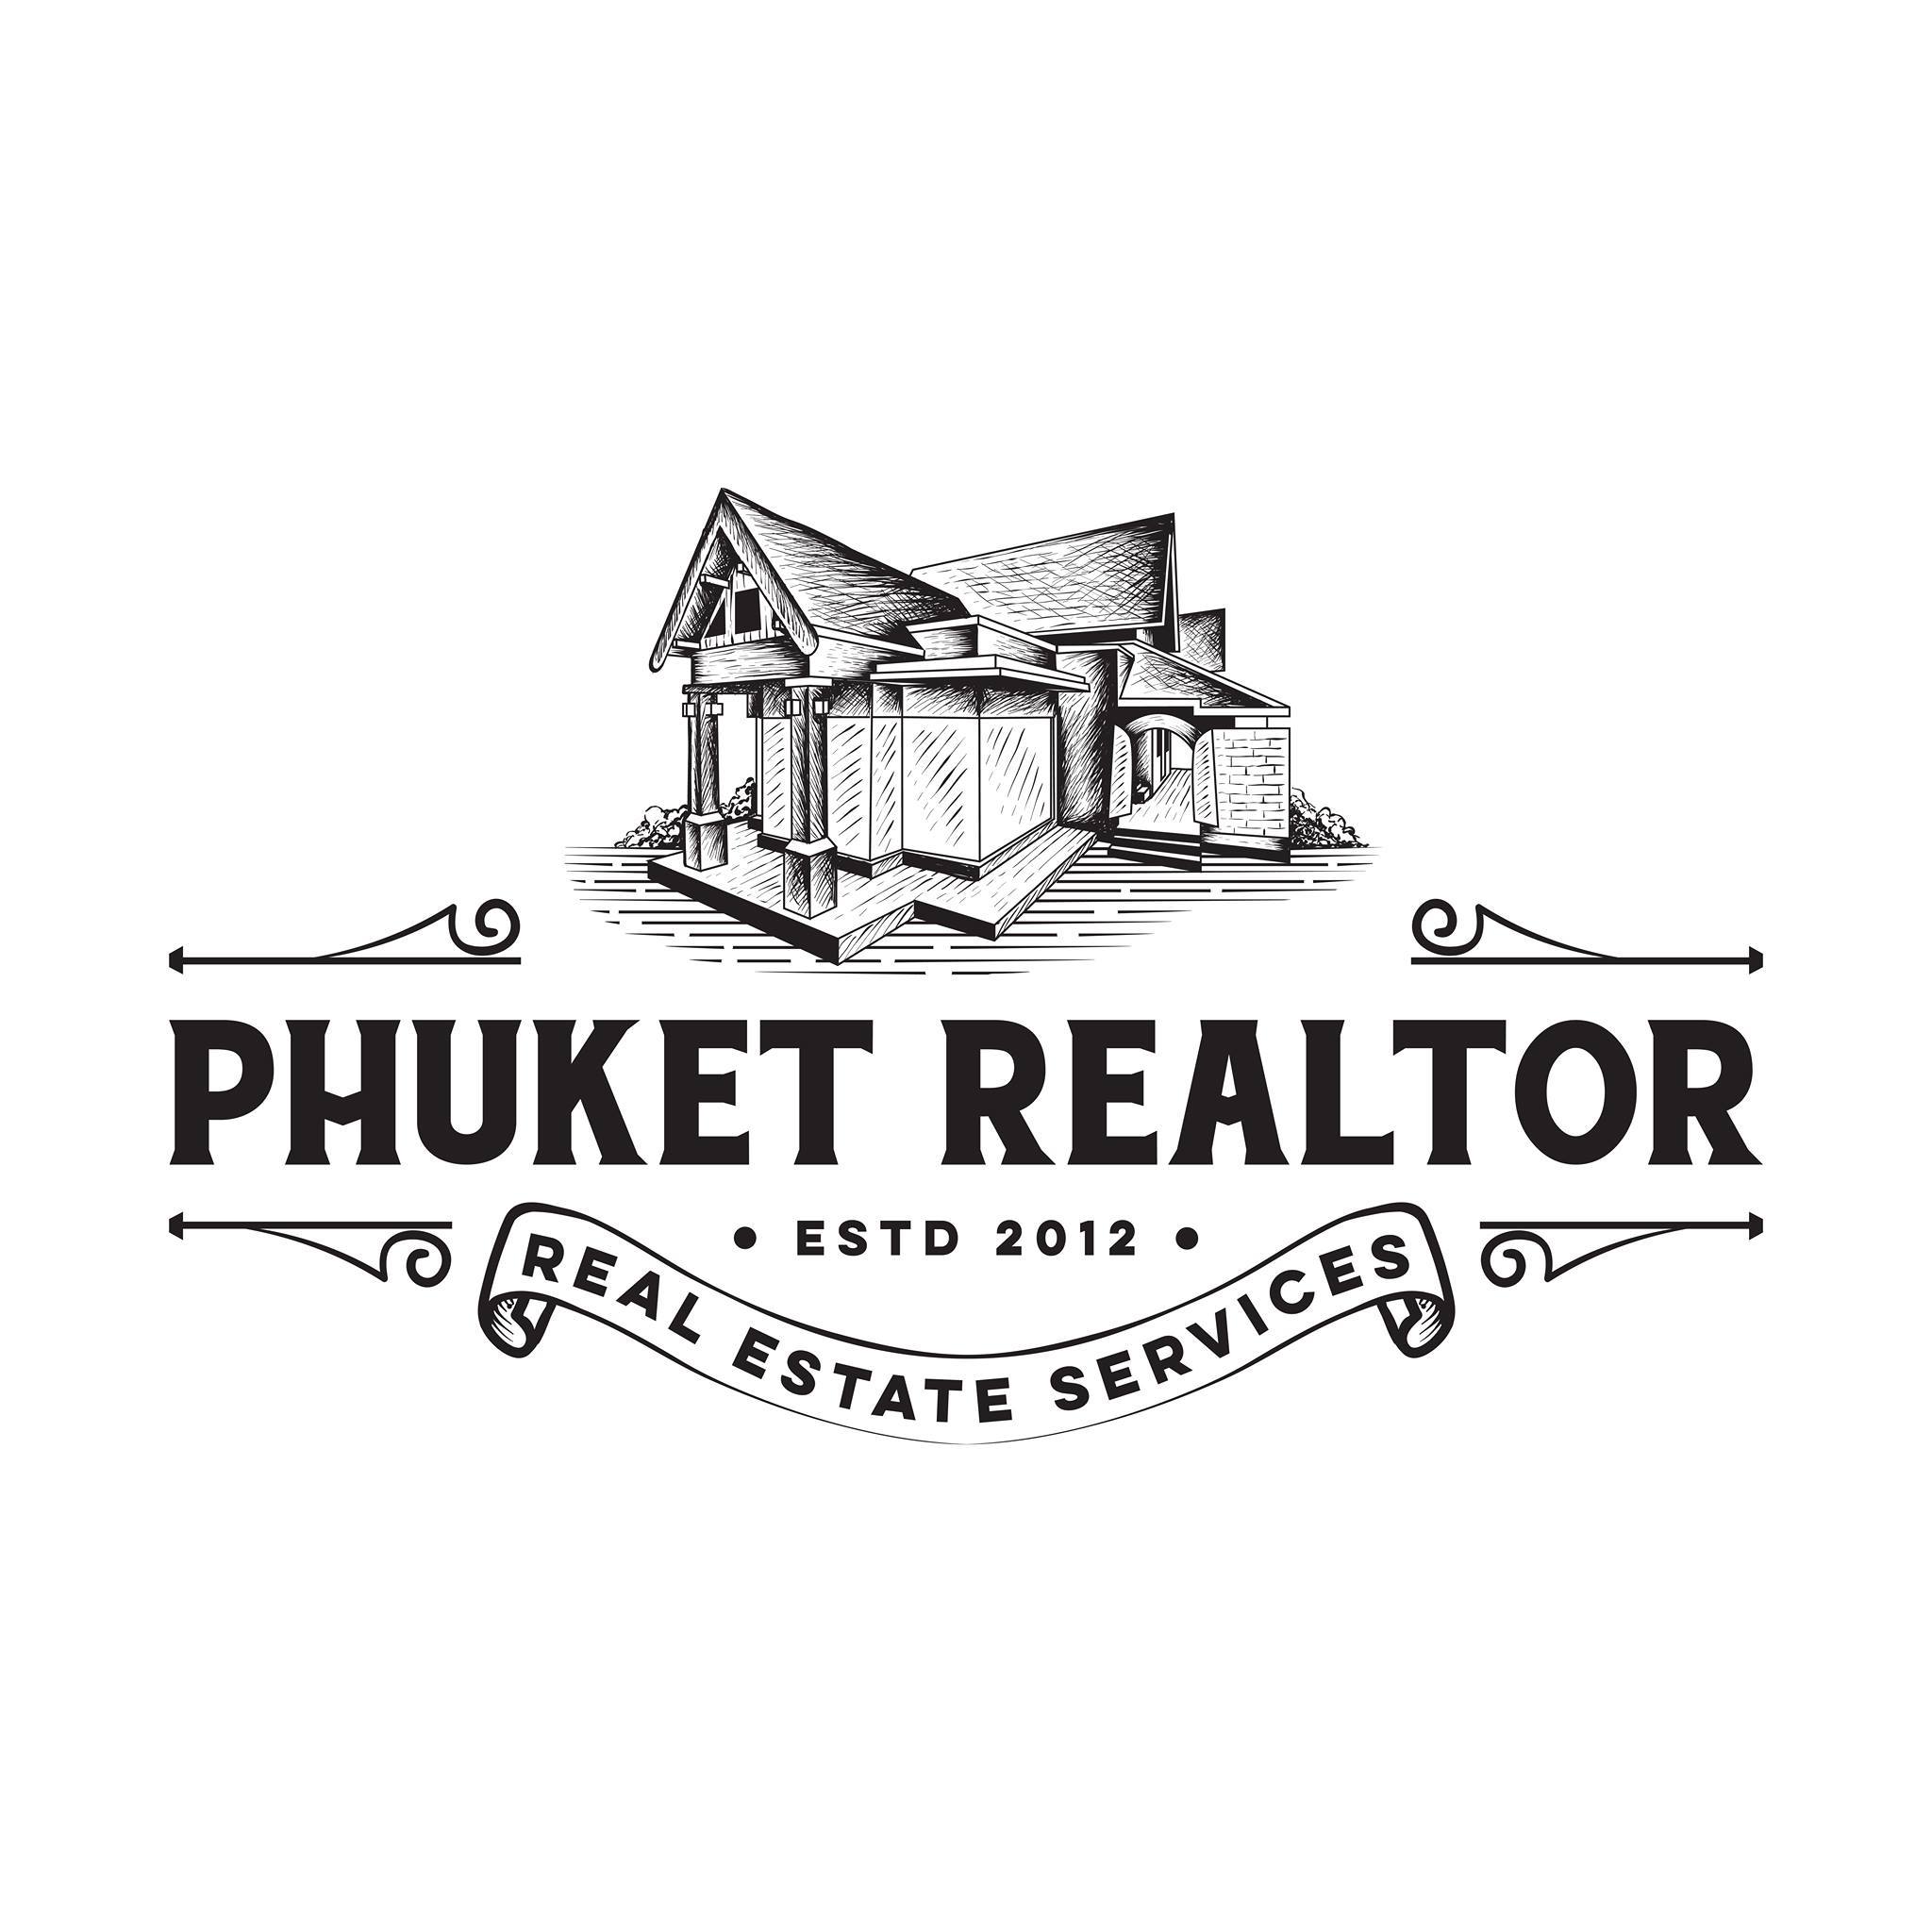 Phuket-Realtor-Real-Estate-Agency-in-Phuket-Thailand-logo.jpg